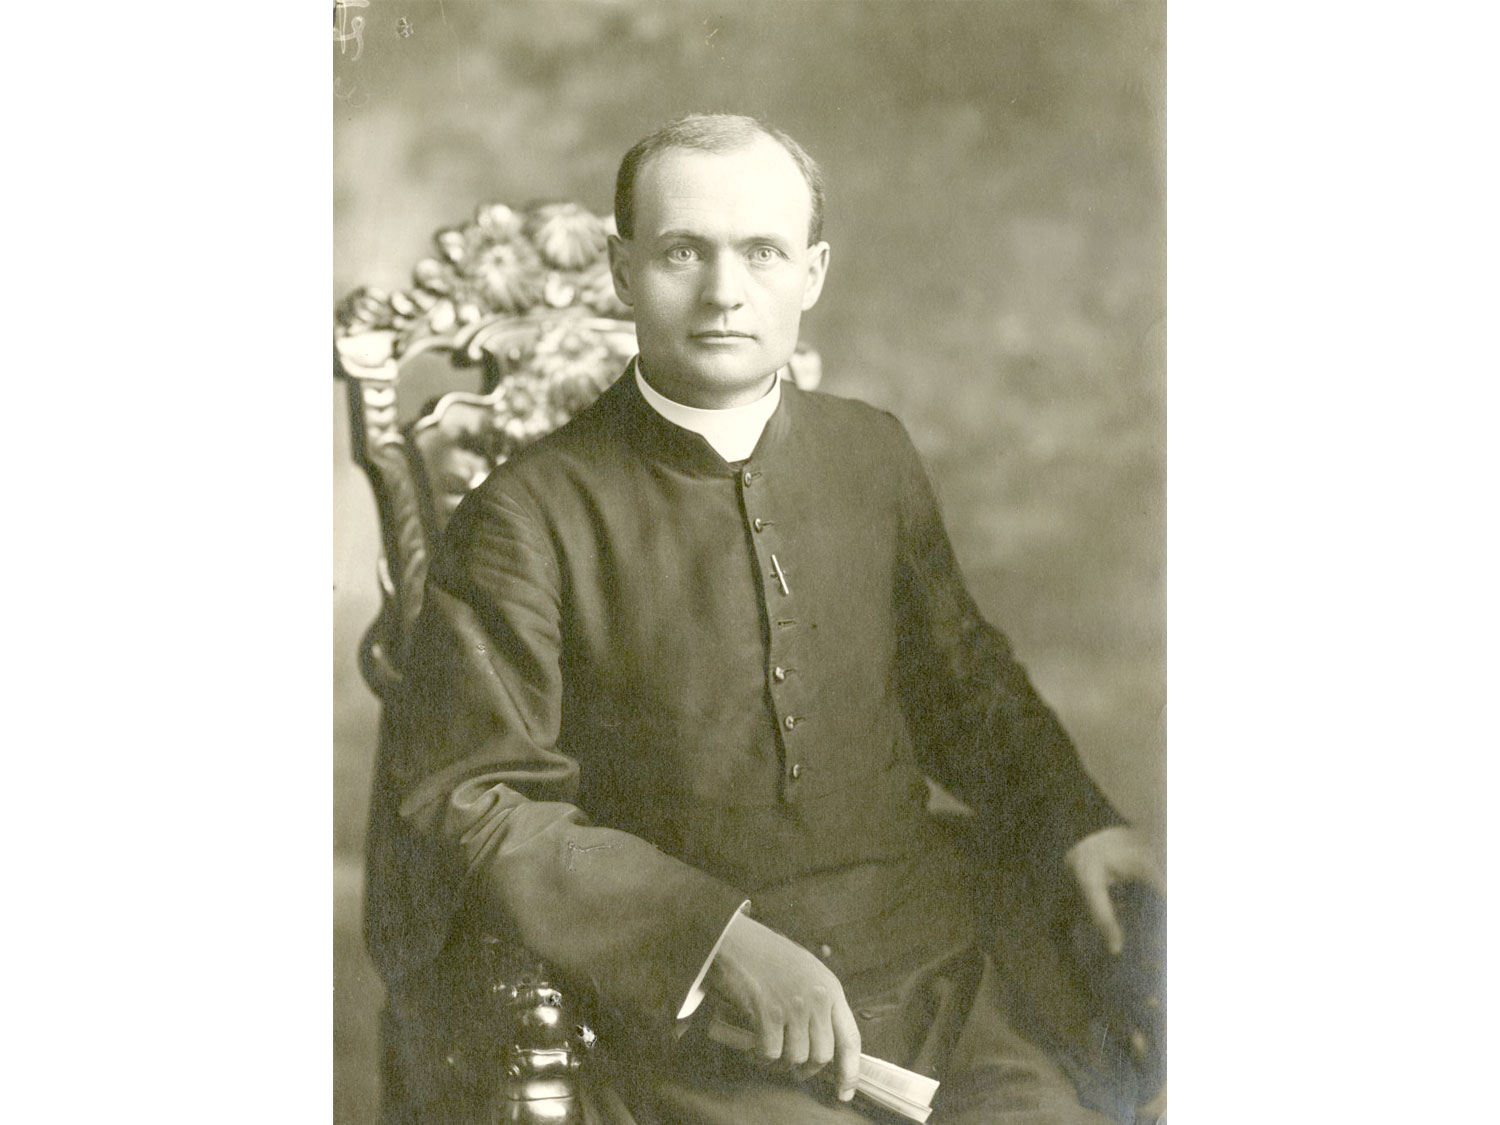 06M_P748S1P0715 - Joseph-Jean-Baptiste Mignault, curé de Sainte-Thérèse de 1925 à 1935. Bibliothèque et Archives nationales du Québec, P748,S1,P715.